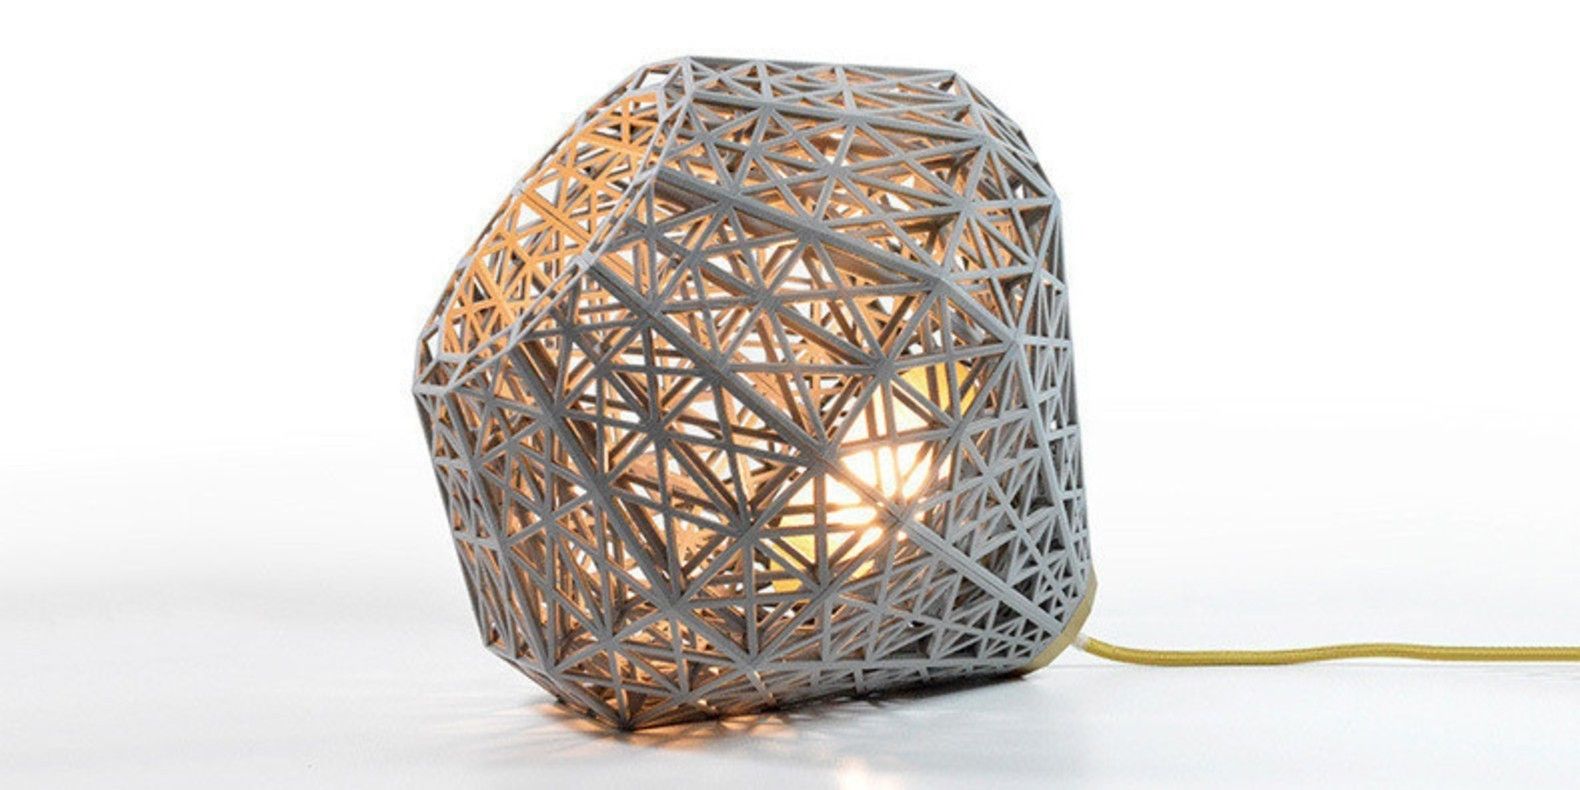 Hier ist eine Auswahl der besten 3D-druckbaren STL-Dateien für 3D-Drucker, um Ihre eigenen Lampen zu drucken